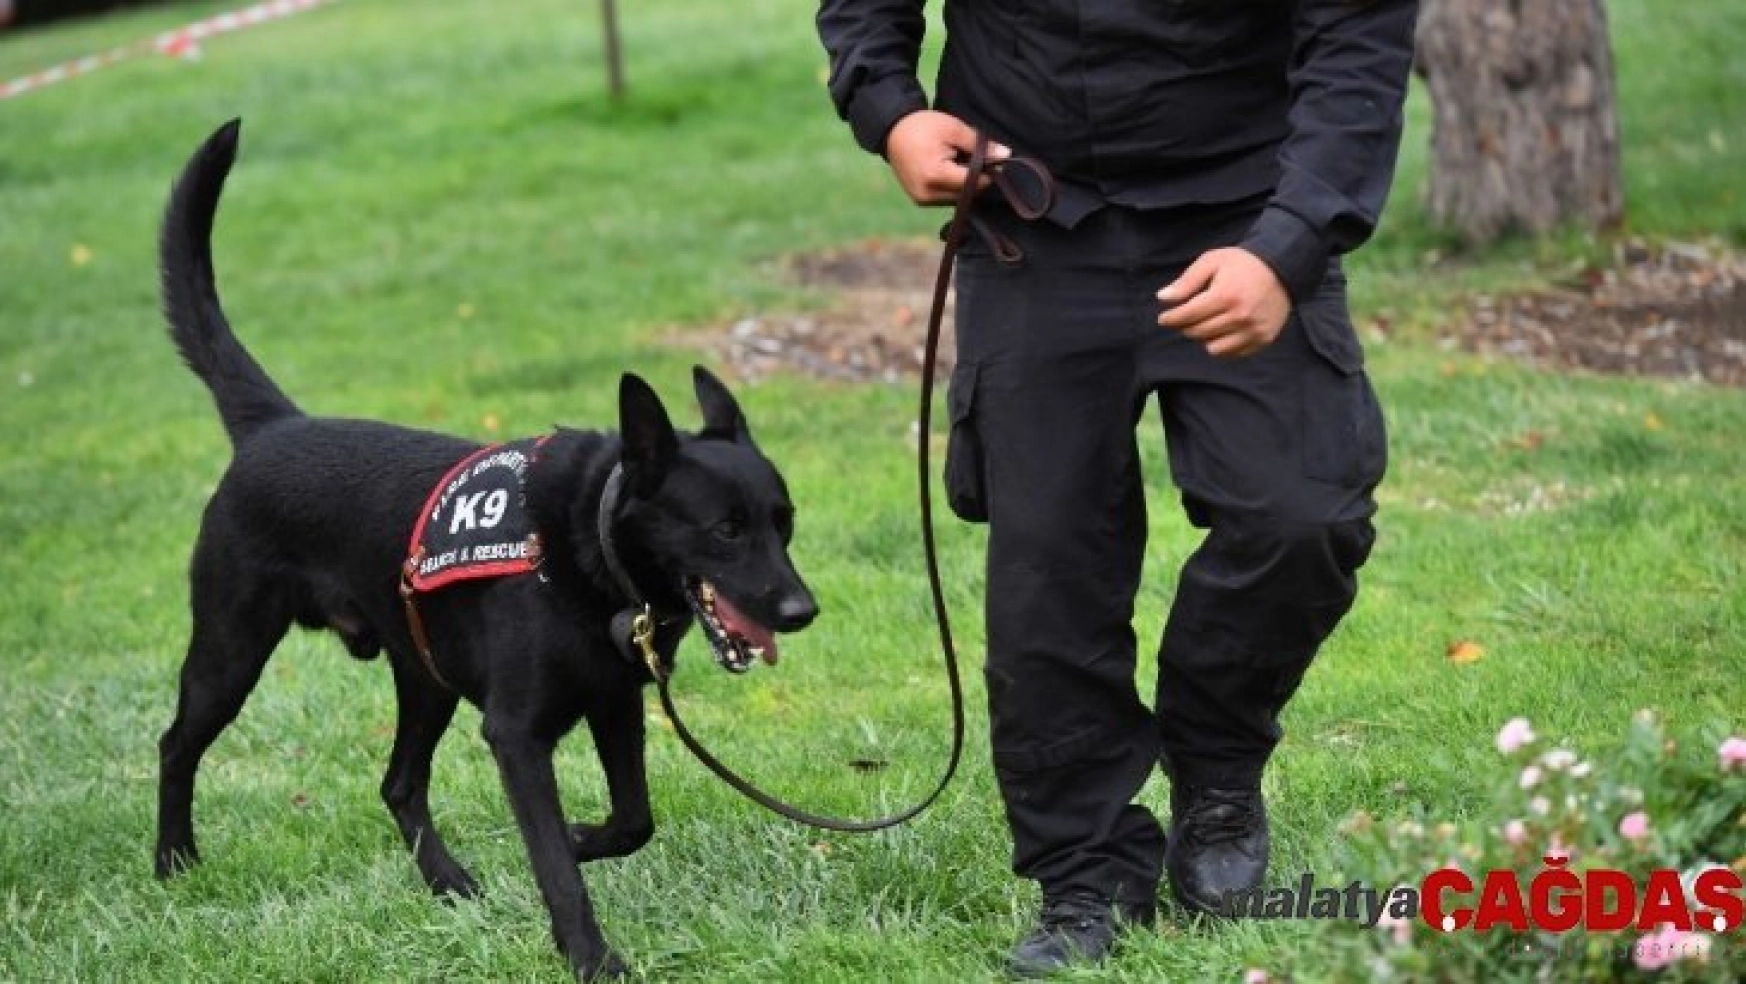 Ankara itfaiyesi K-9 köpekleri artık lisanslı